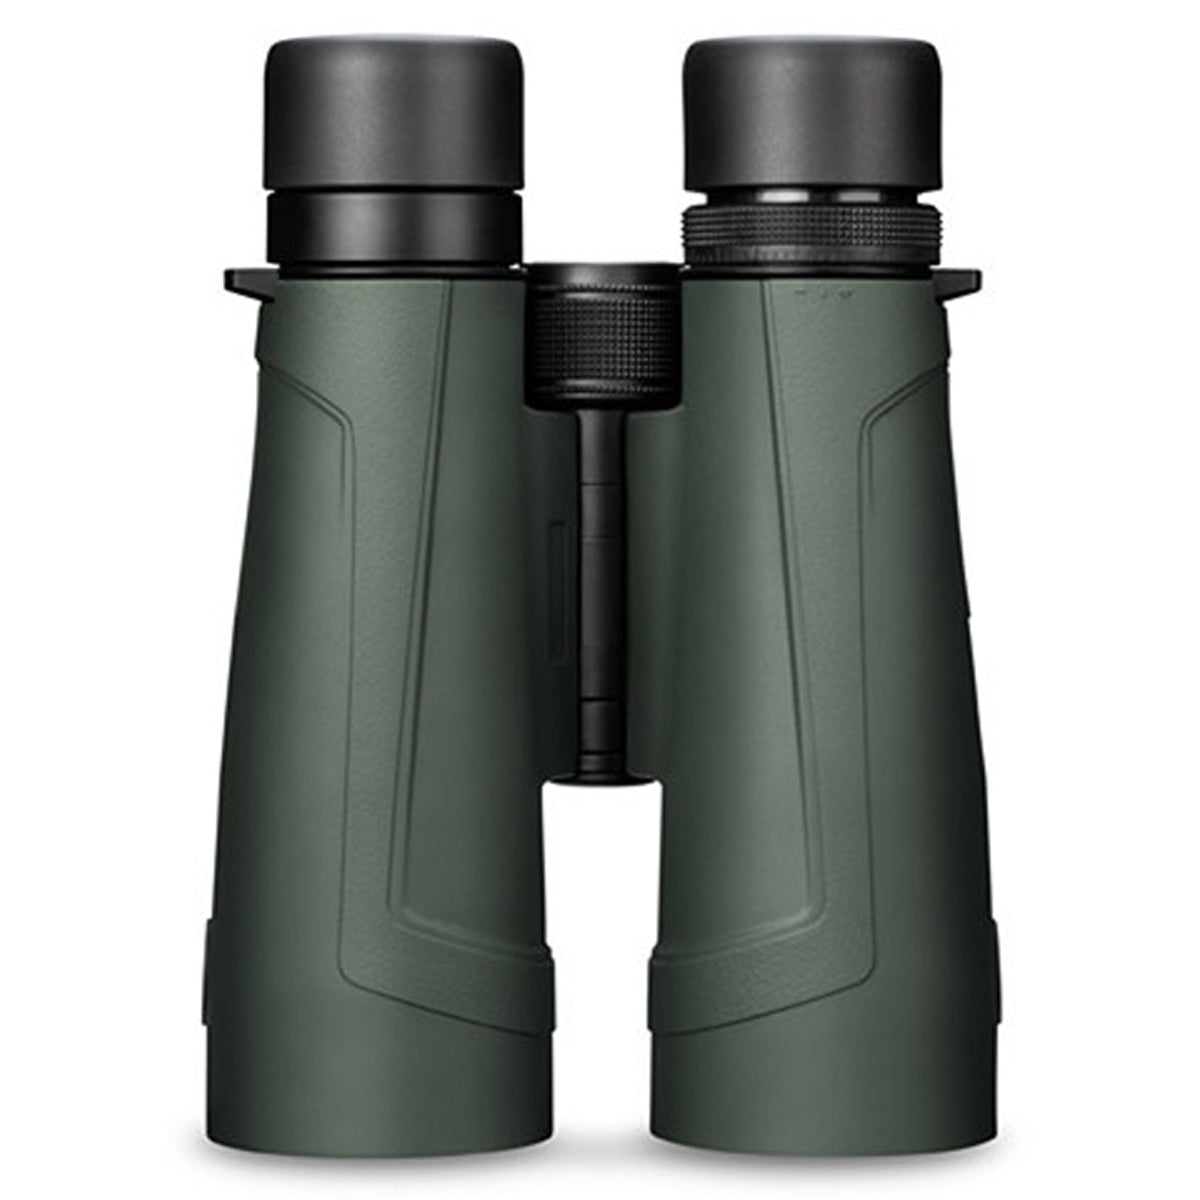 Vortex Kaibab HD 18x56 Binocular by Vortex Optics | Optics - goHUNT Shop